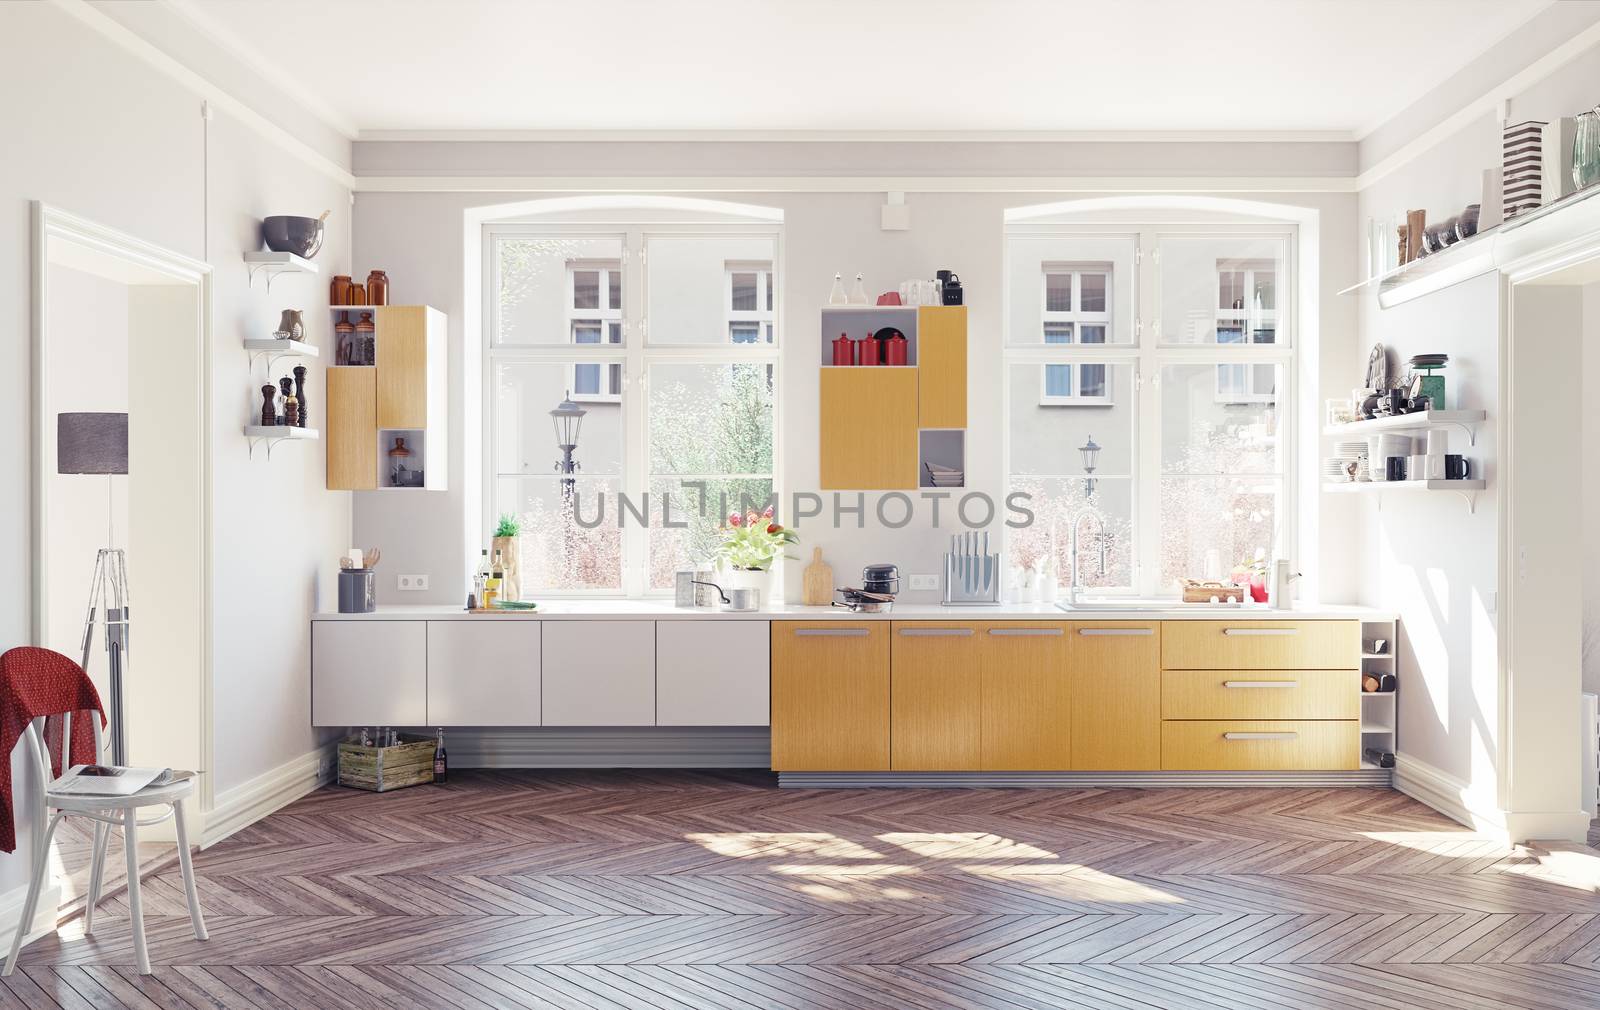 the modern kitchen interior. 3d render concept